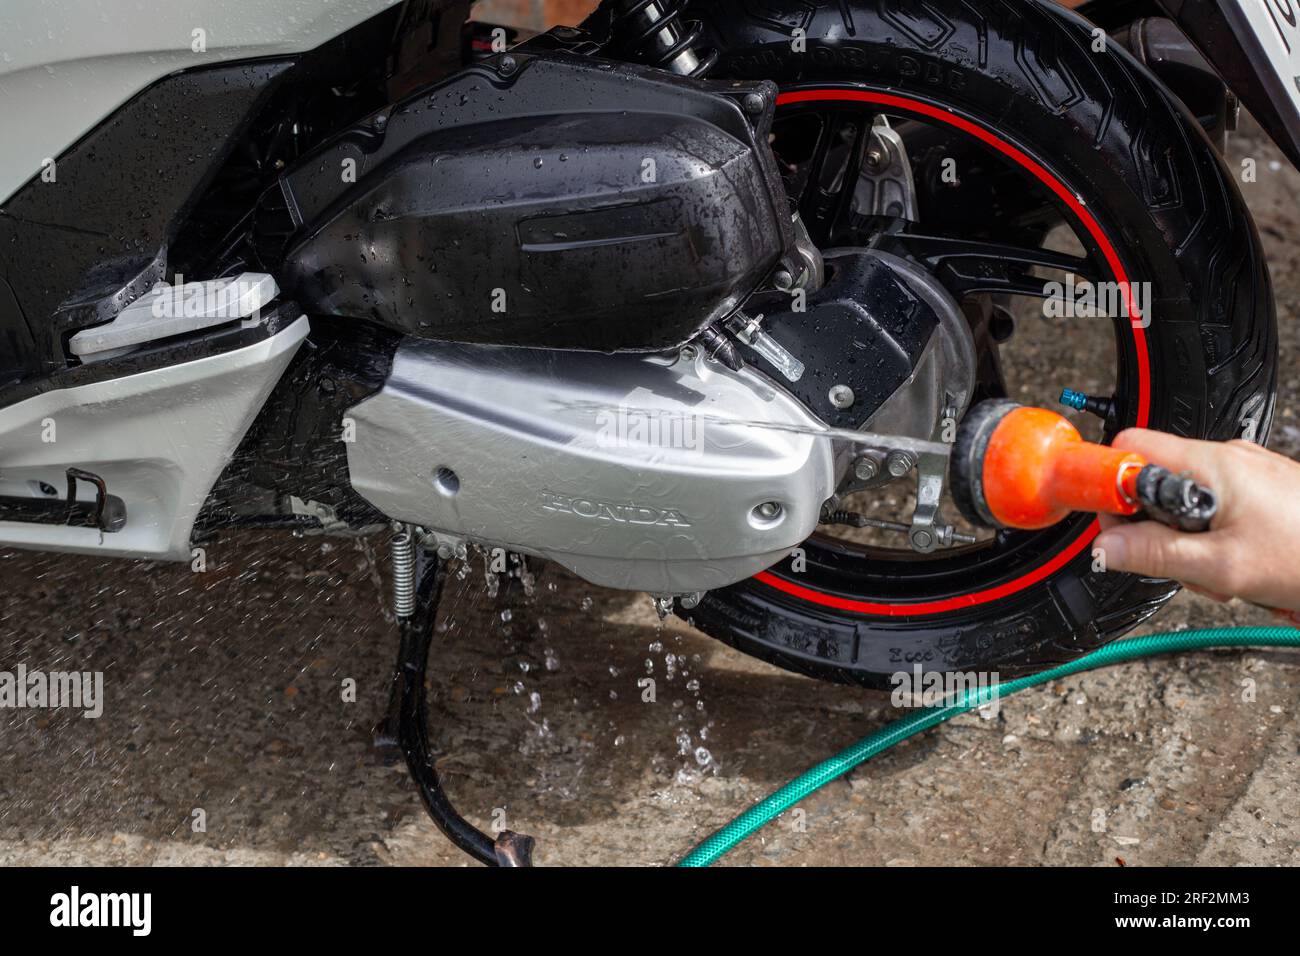 Le propriétaire lave sa moto Honda avec de l'eau provenant d'un tuyau. Anapa, Russie-04.10.2022 Banque D'Images